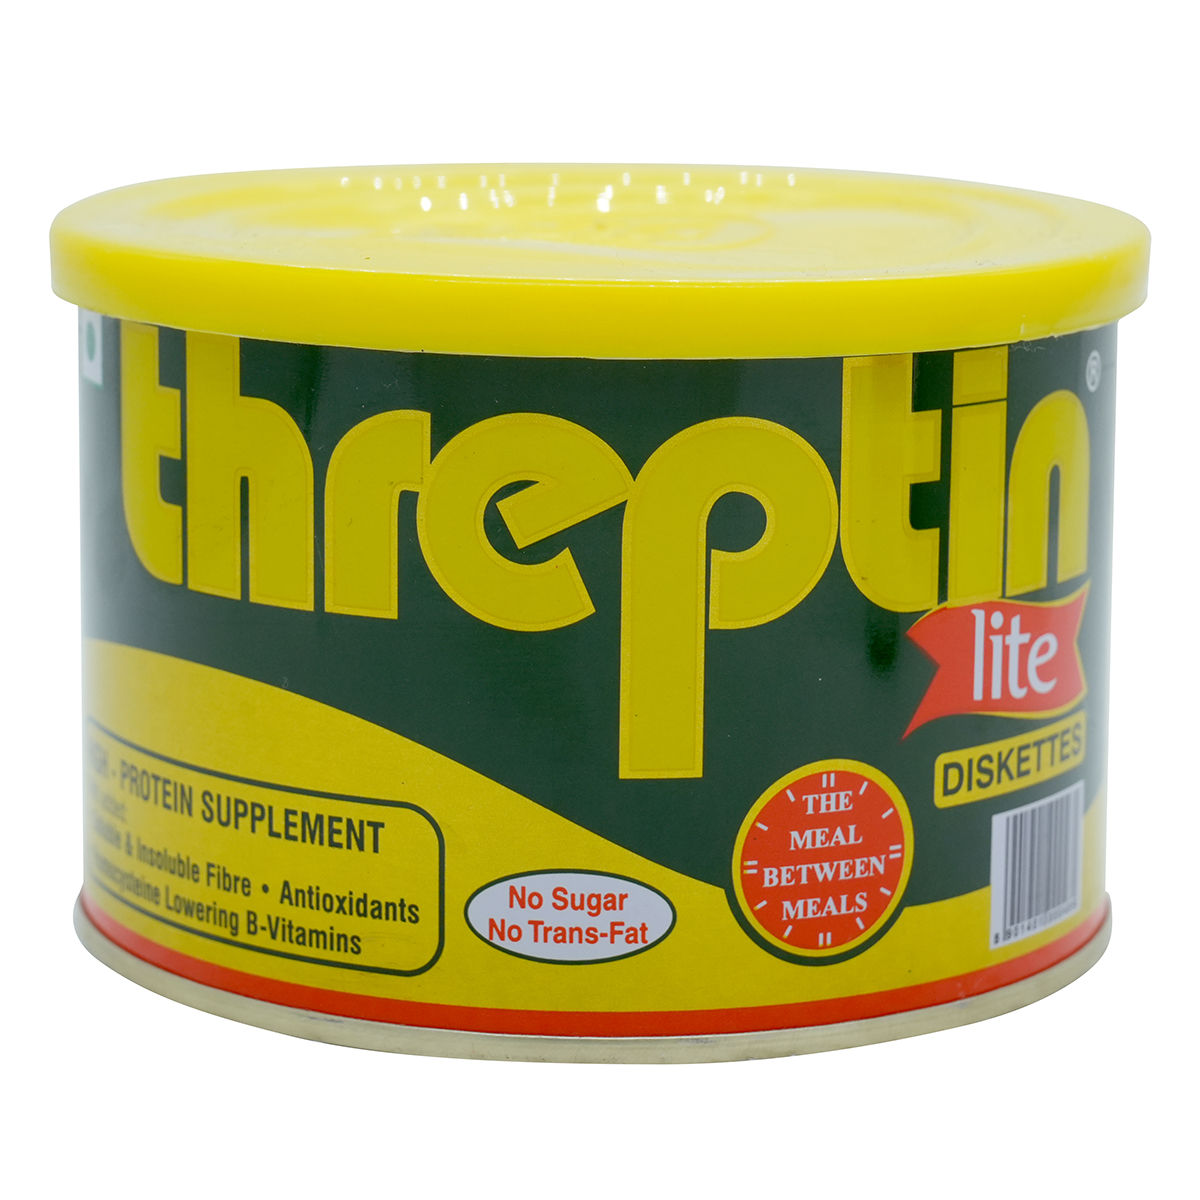 Buy Threptin Lite High-Protein Supplement Diskette 275 gm Online